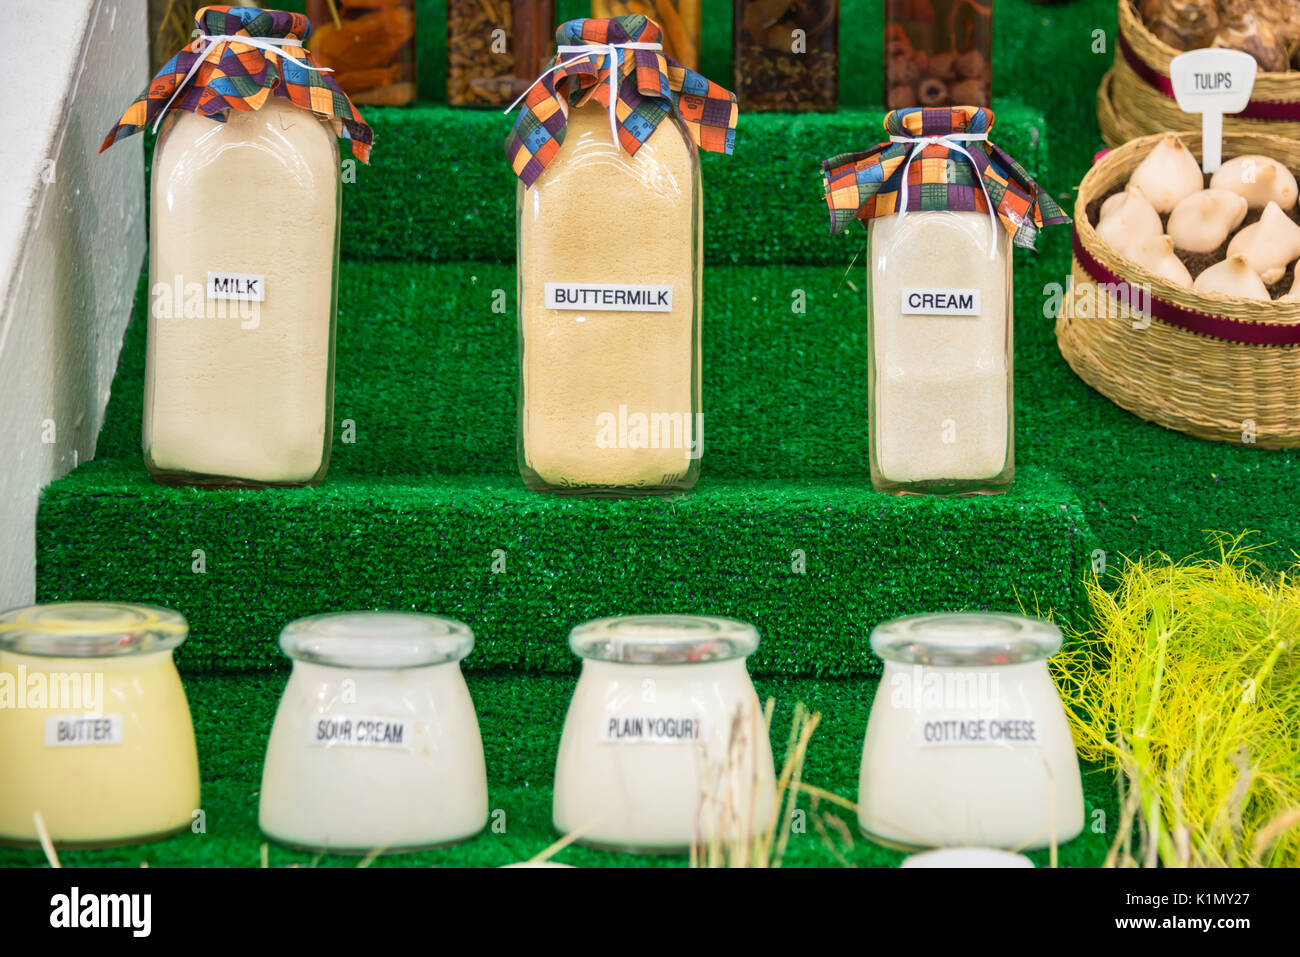 Bouteilles et pots étiquetés de divers produits laitiers produits affichés Banque D'Images